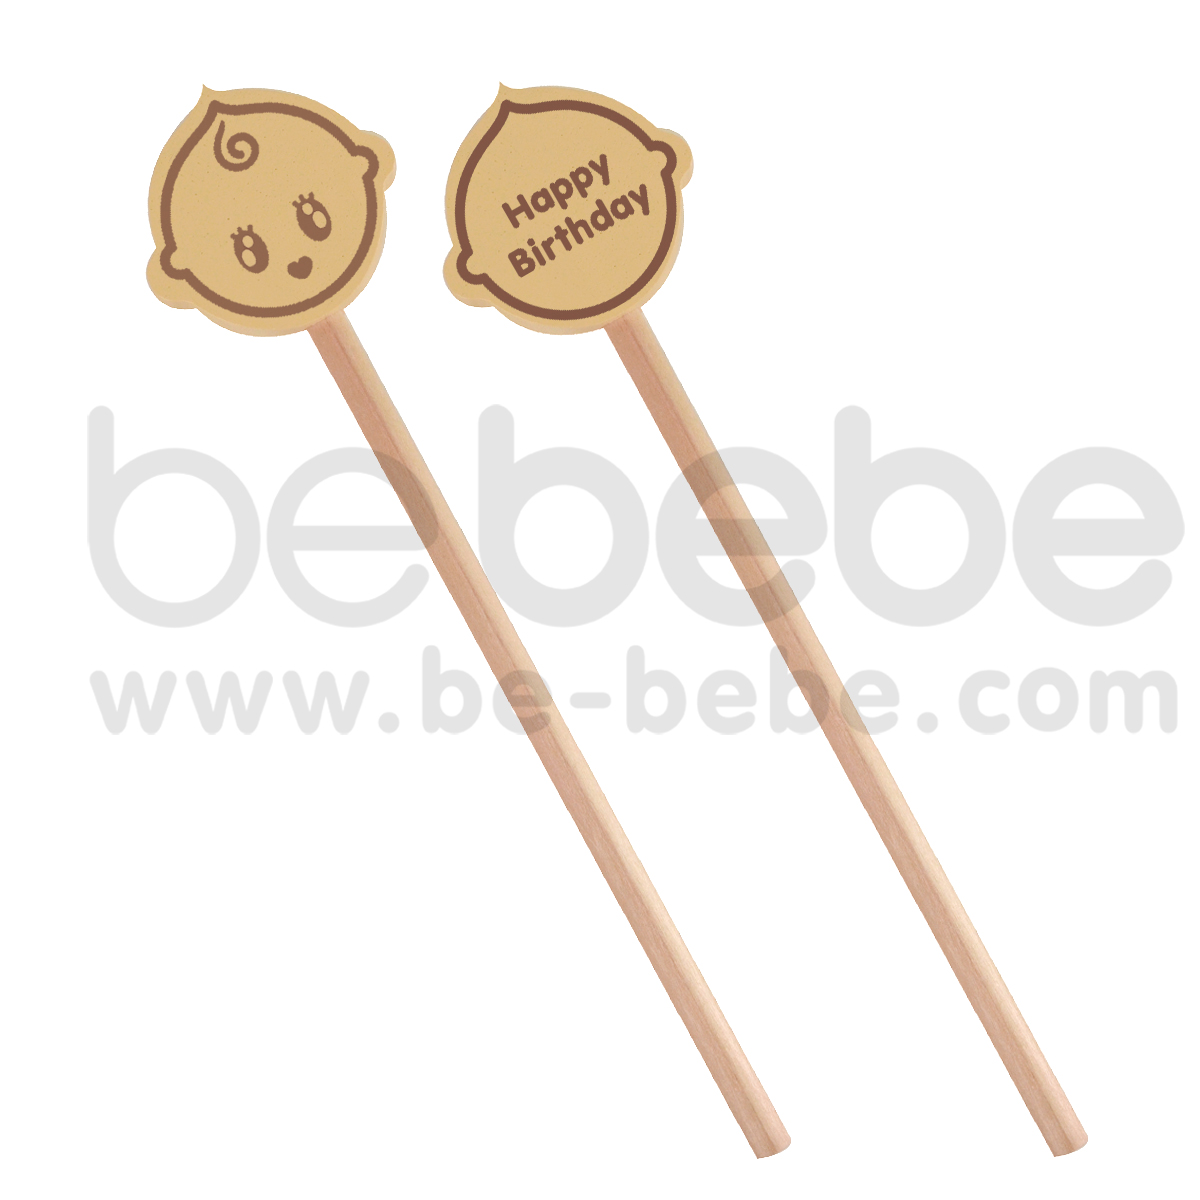 bebebe : Cream Pencil- Happy Birthday